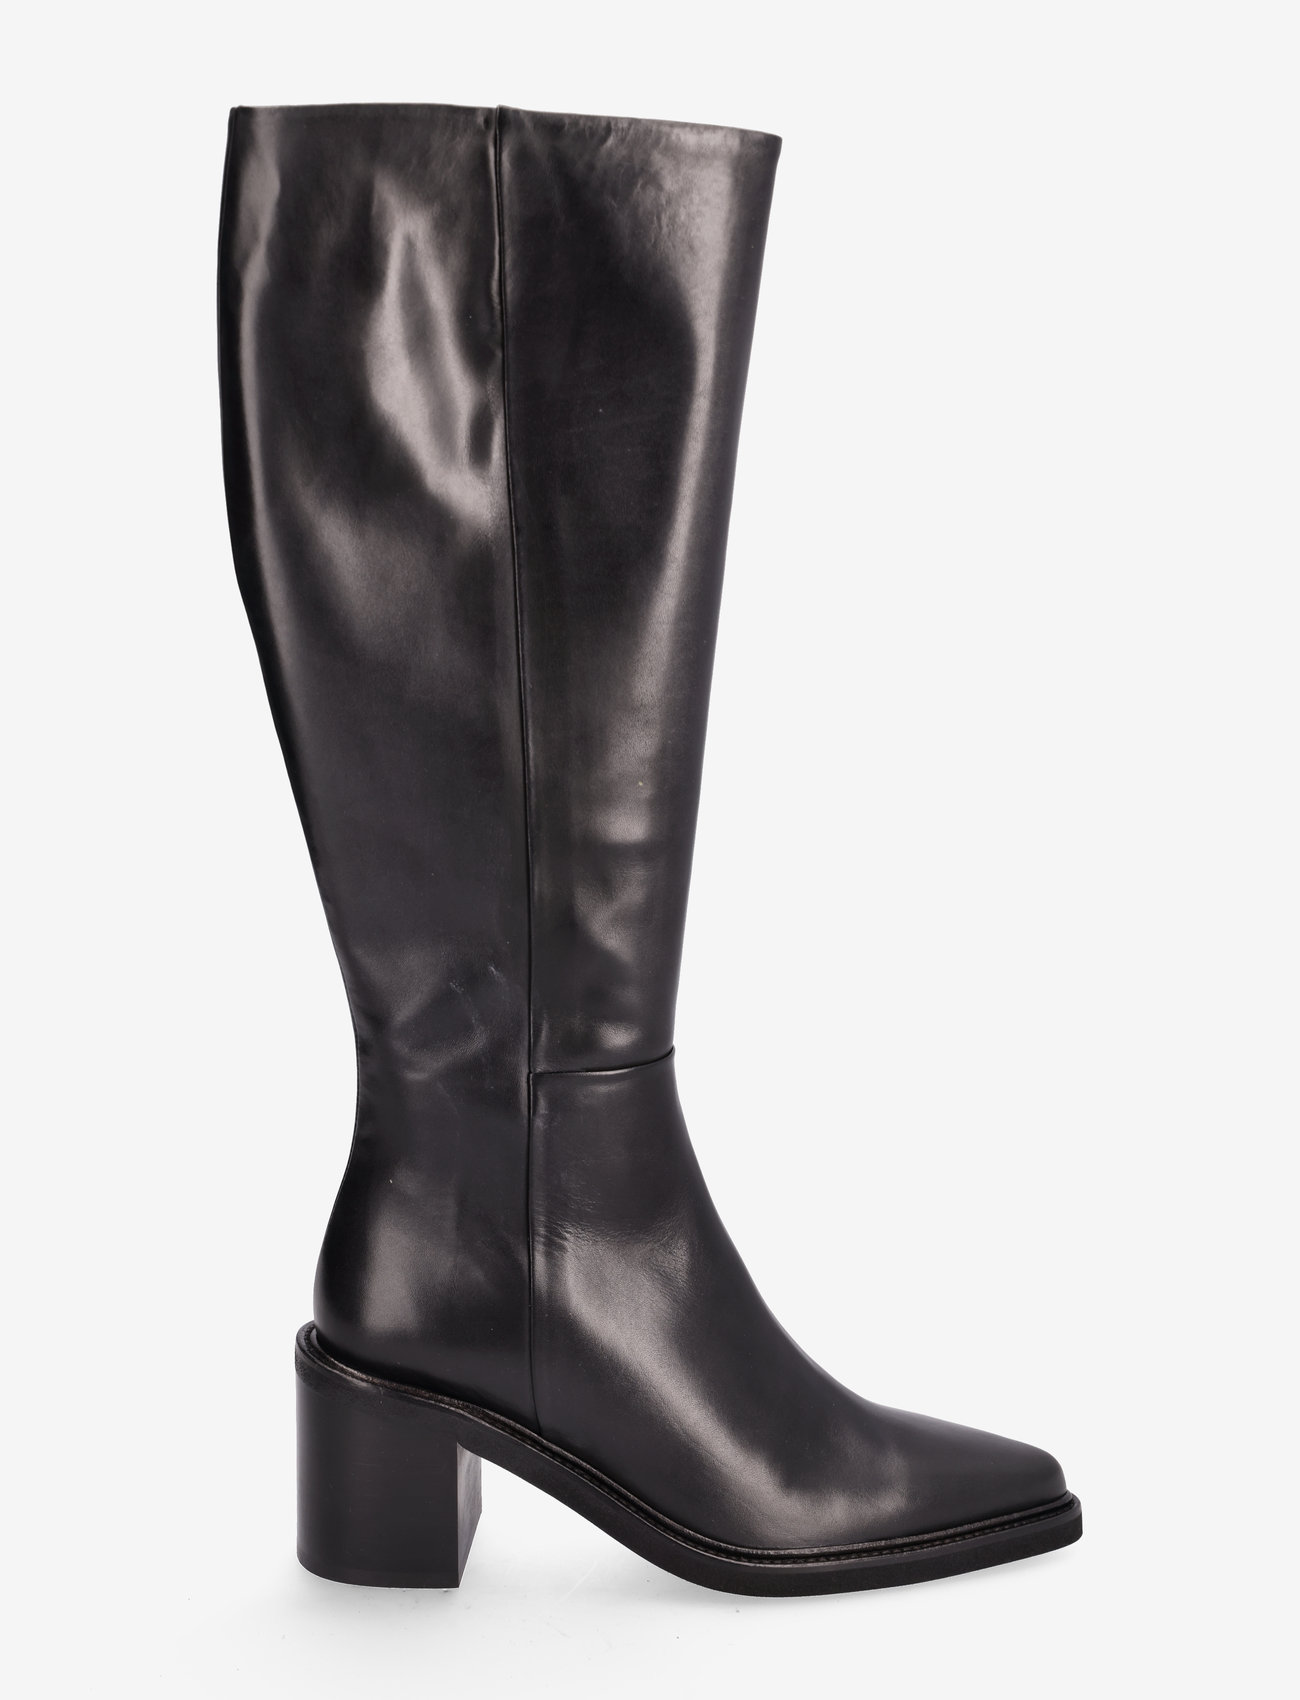 Billi Bi - Long Boots - kniehohe stiefel - black calf - 1